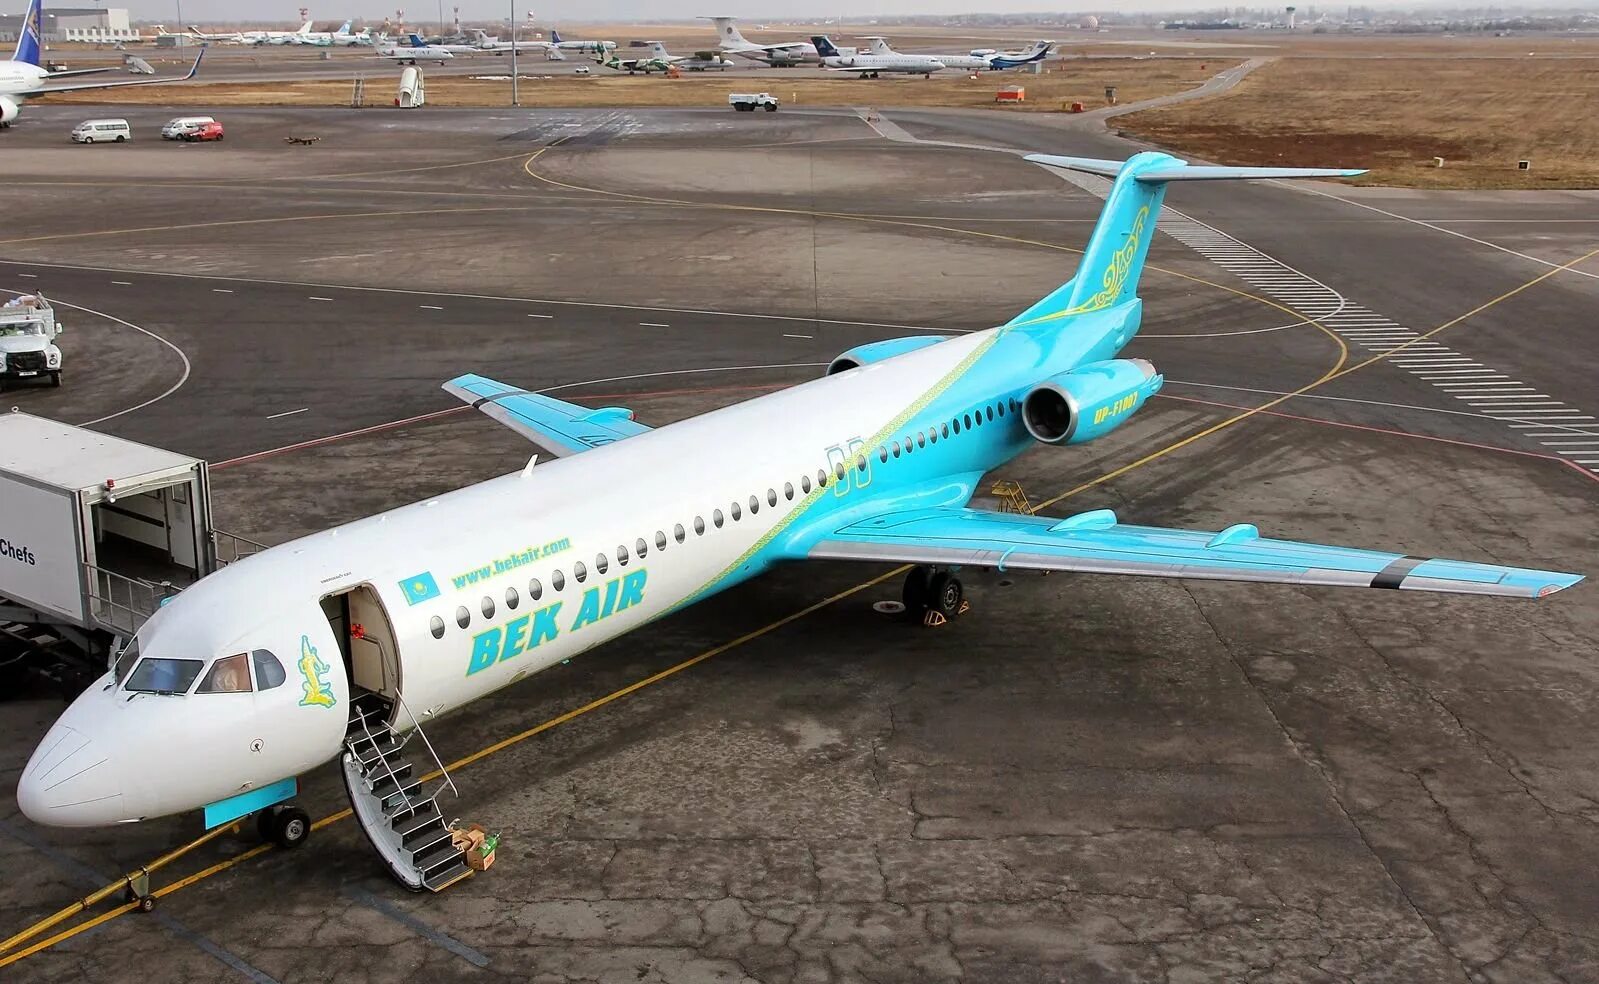 Купить самолет в казахстане. Fokker 100 самолет. Самолёт авиакомпании Бек Эйр. Bek Air авиакомпании Казахстана. Bek Air 2100.